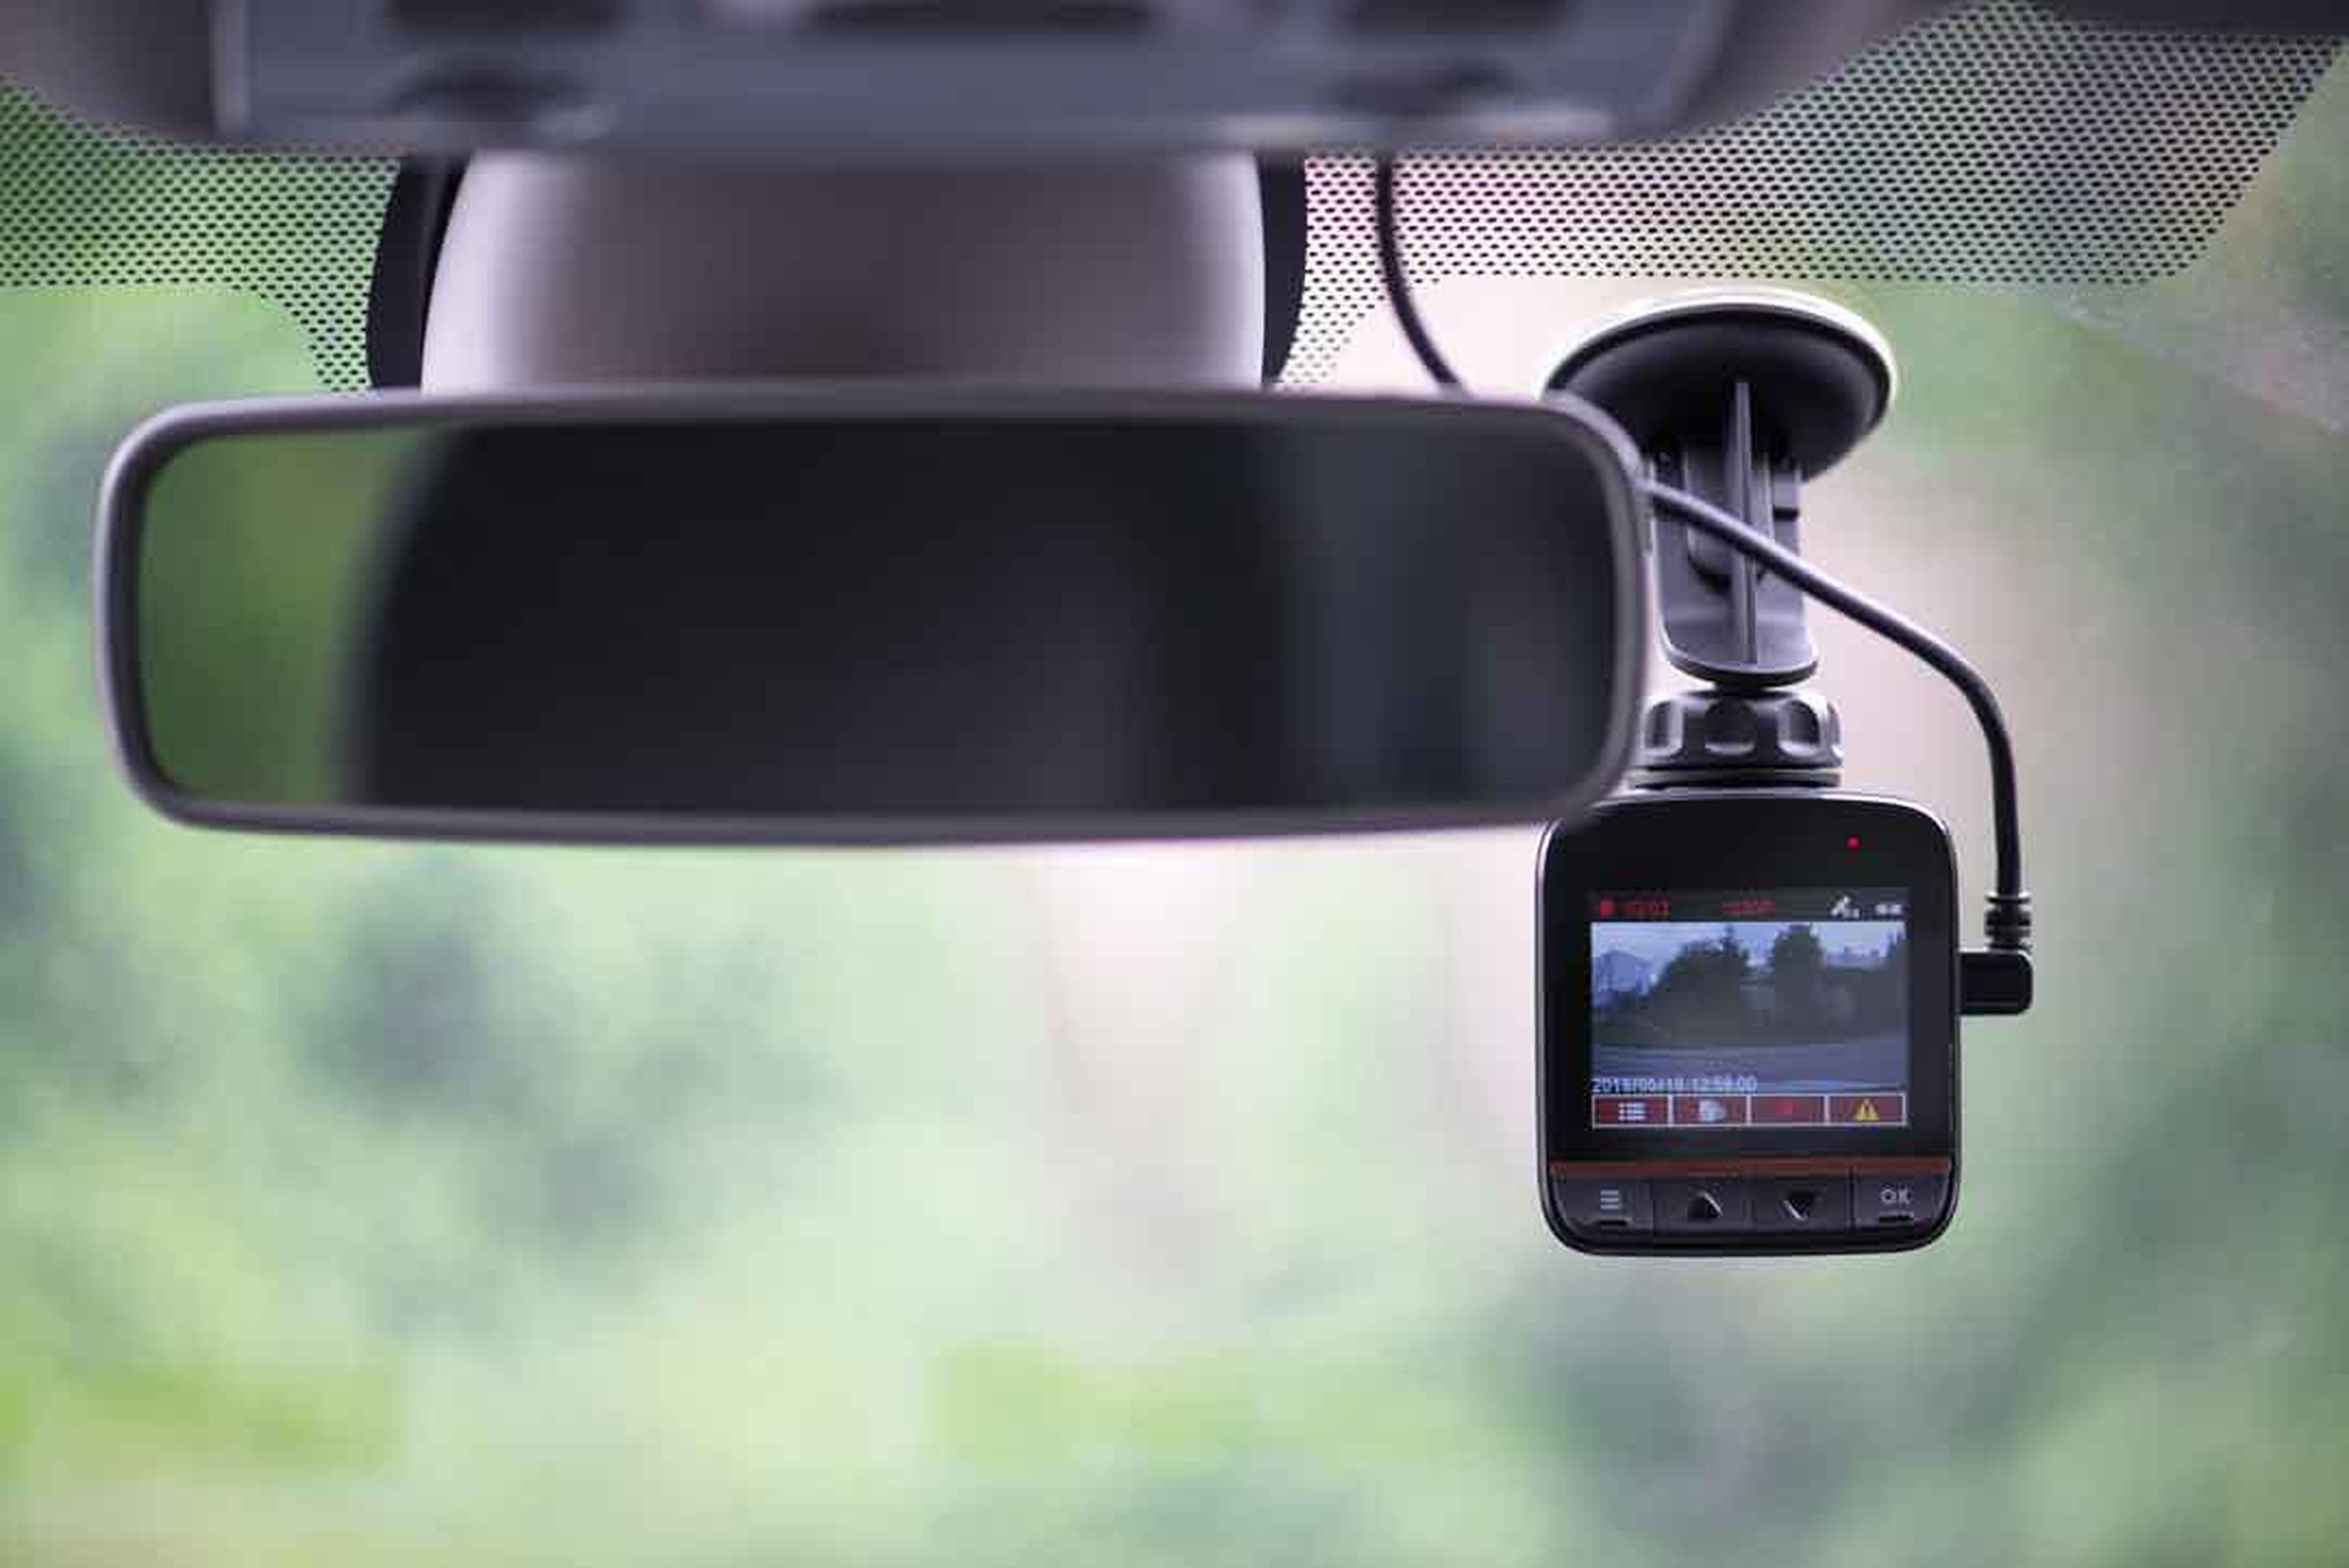 Hasta 1.500 euros de multa por llevar una cámara en el coche